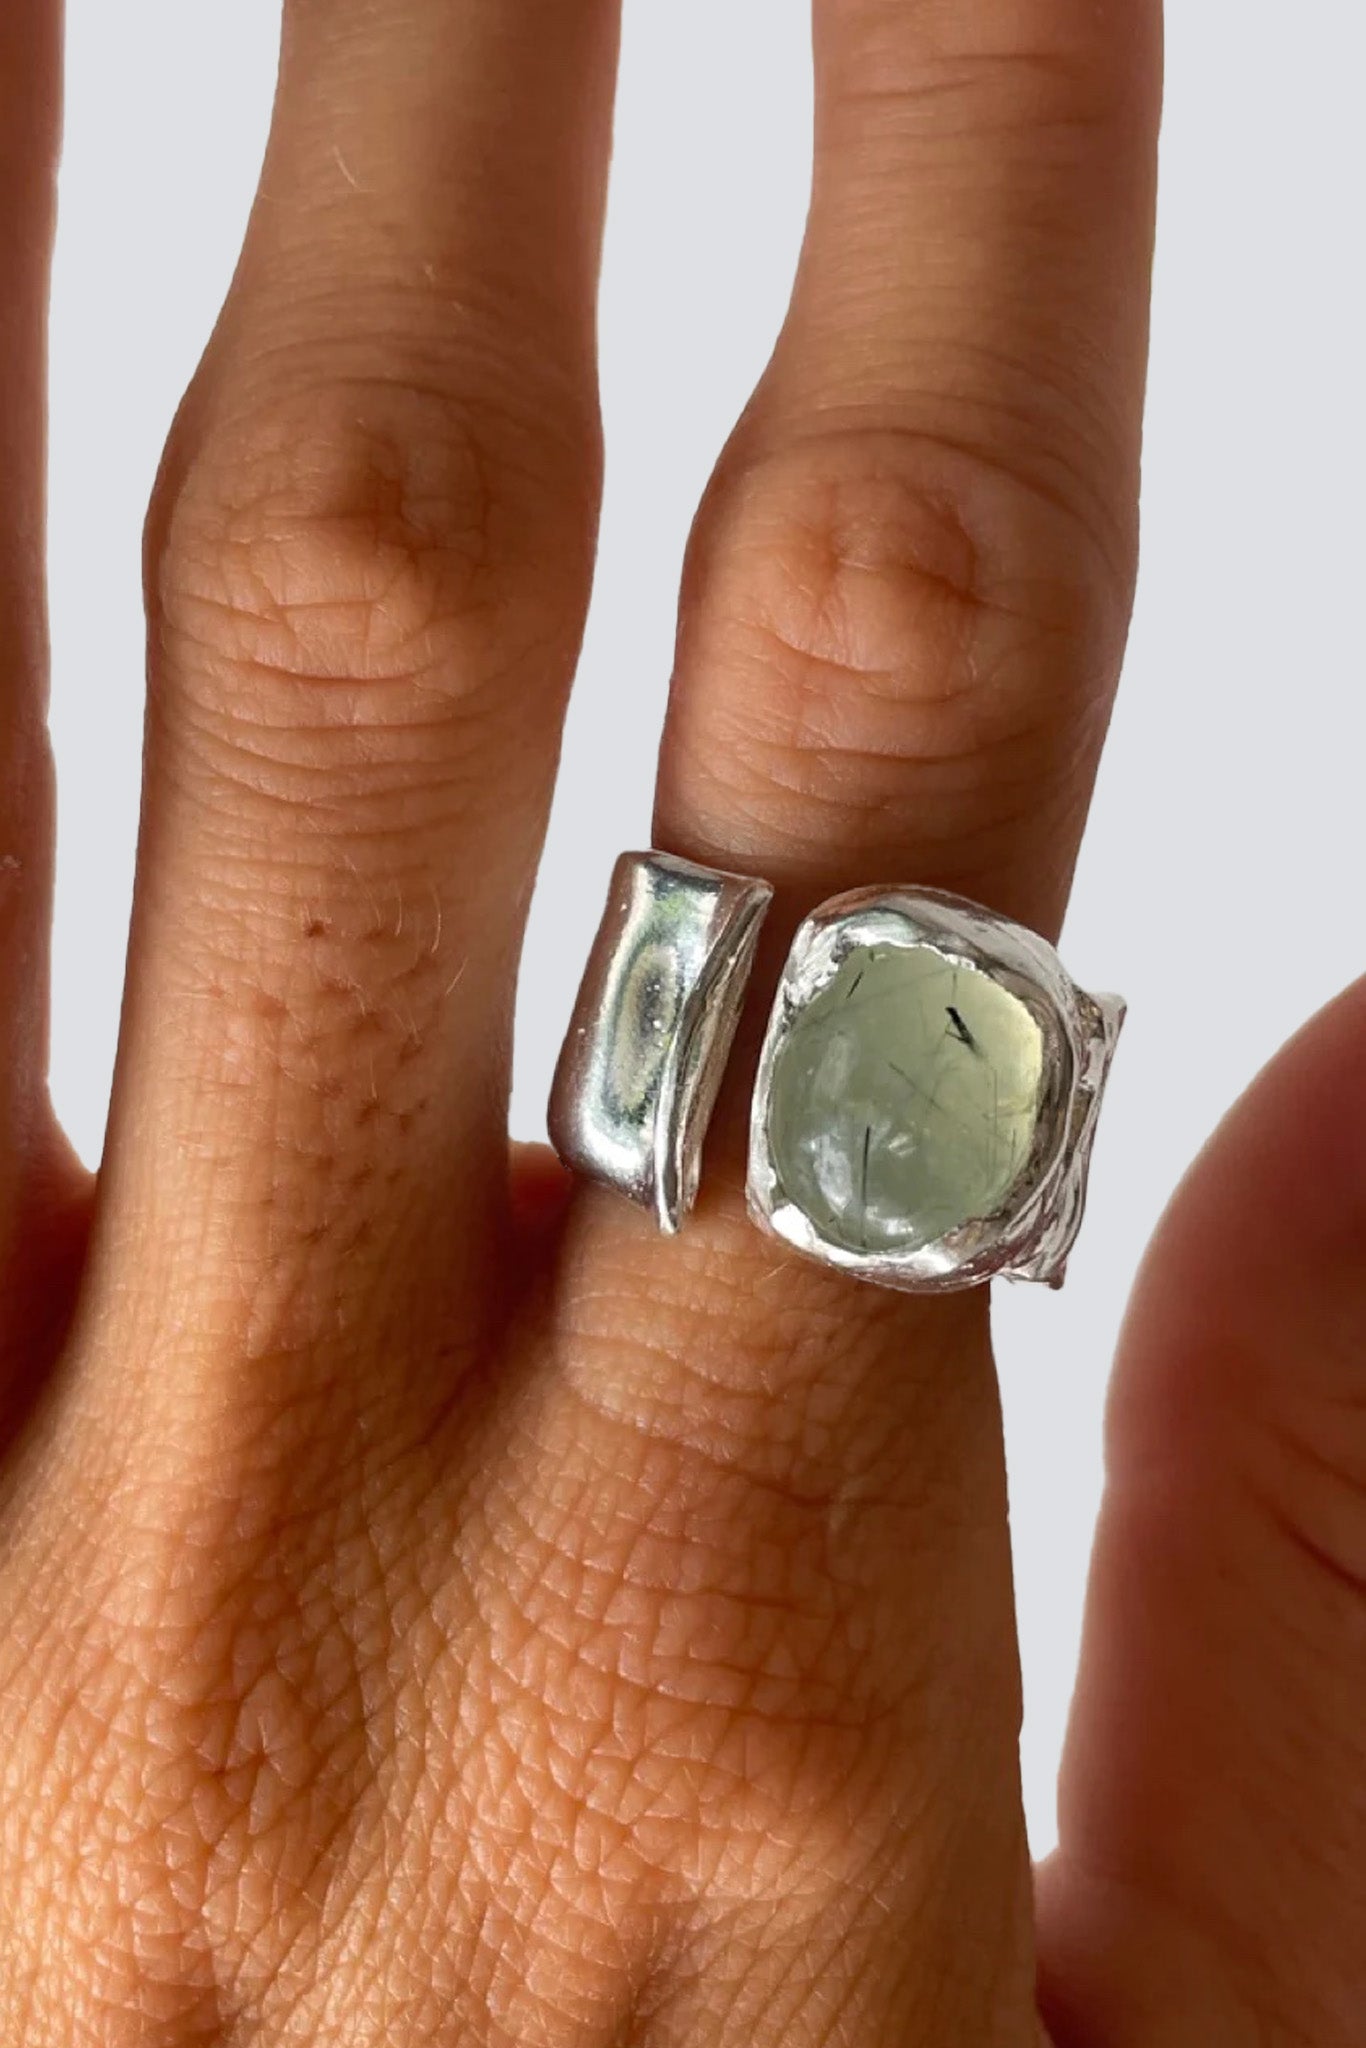 Silver/Green Uva Ring